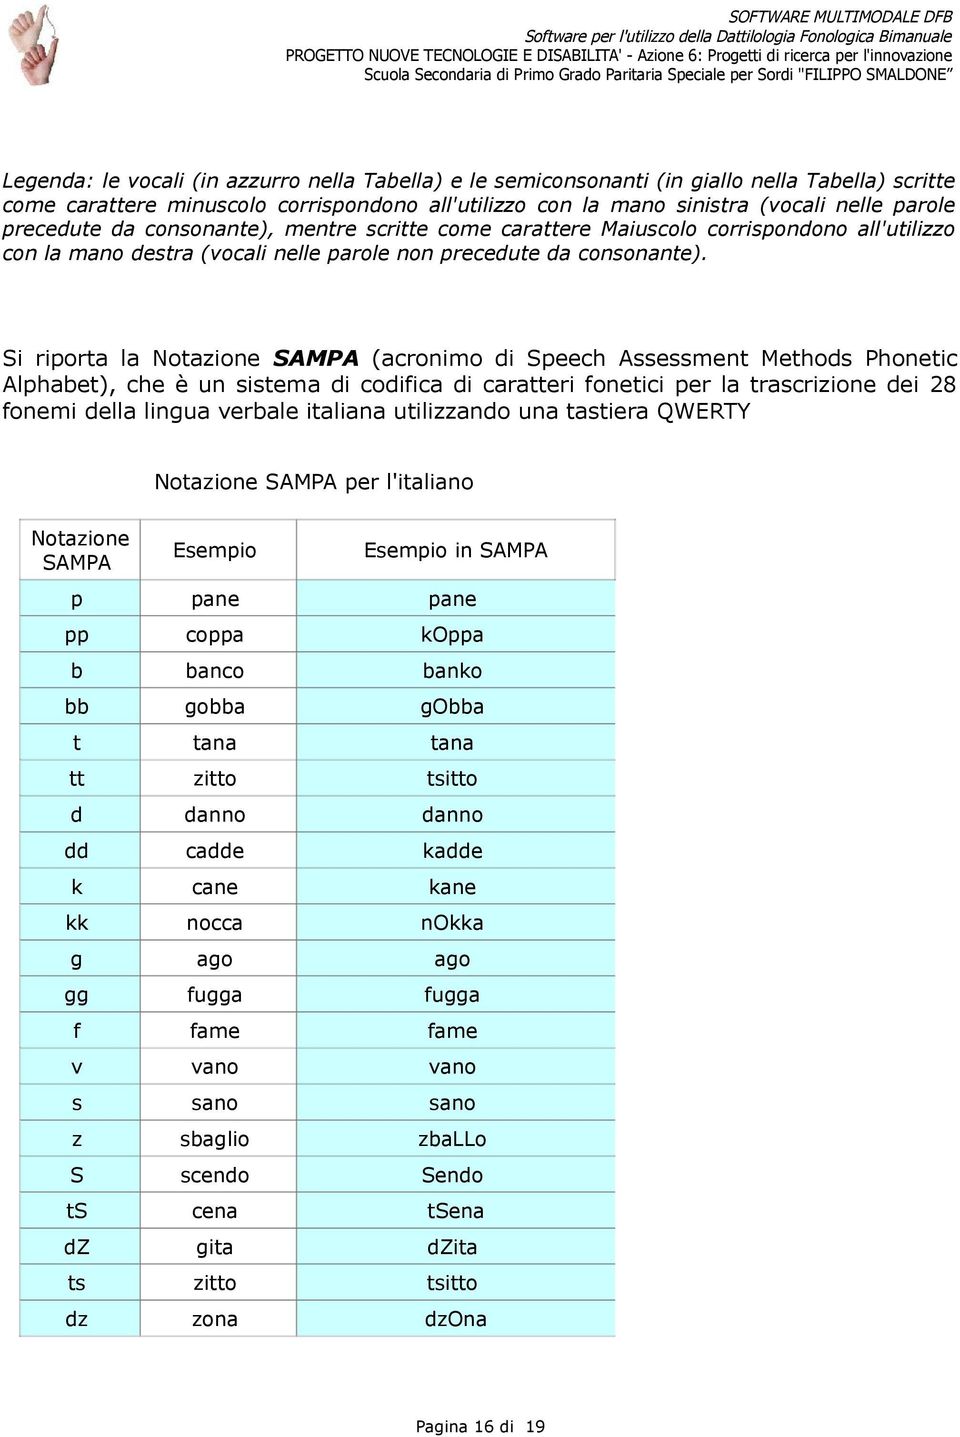 Si riporta la Notazione SAMPA (acronimo di Speech Assessment Methods Phonetic Alphabet), che è un sistema di codifica di caratteri fonetici per la trascrizione dei 28 fonemi della lingua verbale